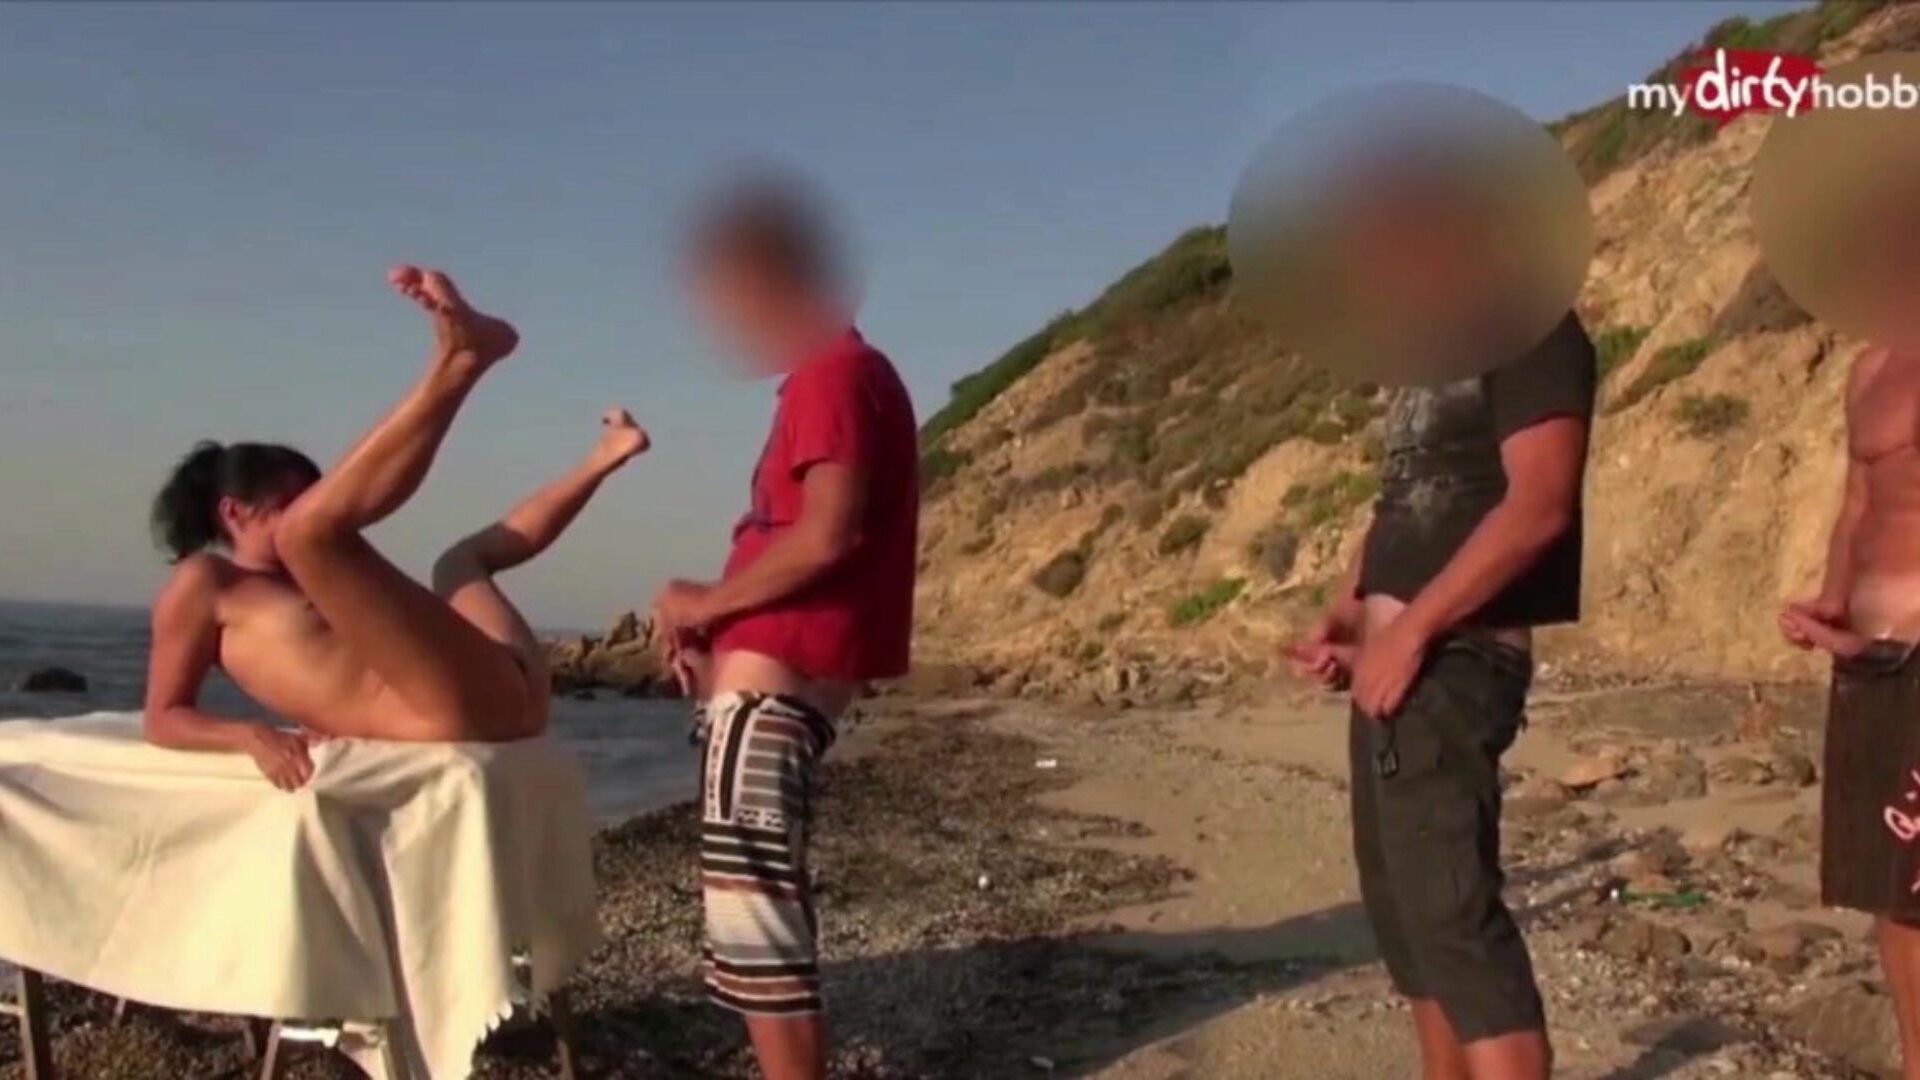 mydirtyhobby - vijf jongens wisselen elkaar af tegen de prachtige moeder die ik graag zou willen neuken op het strand